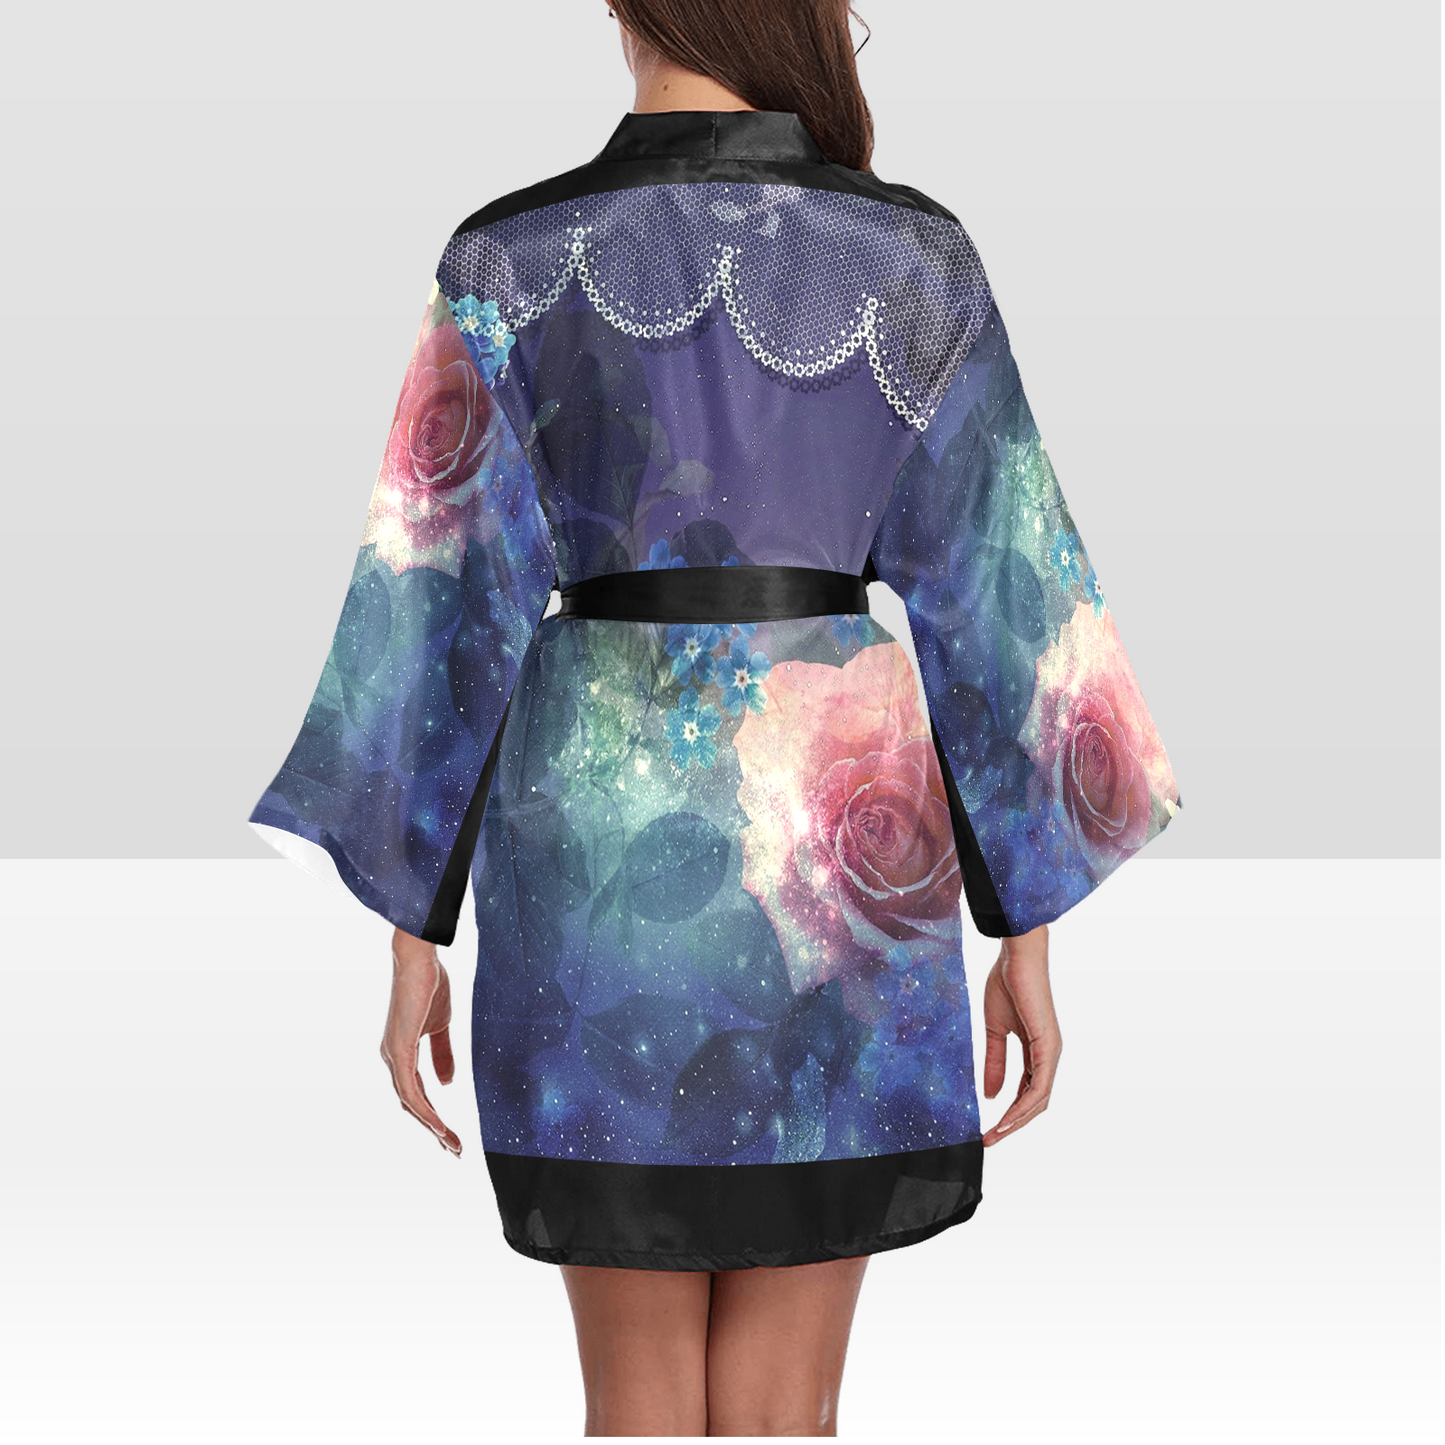 Victorian Lace Kimono Robe, Black or White Trim, Sizes XS to 2XL, Design 02